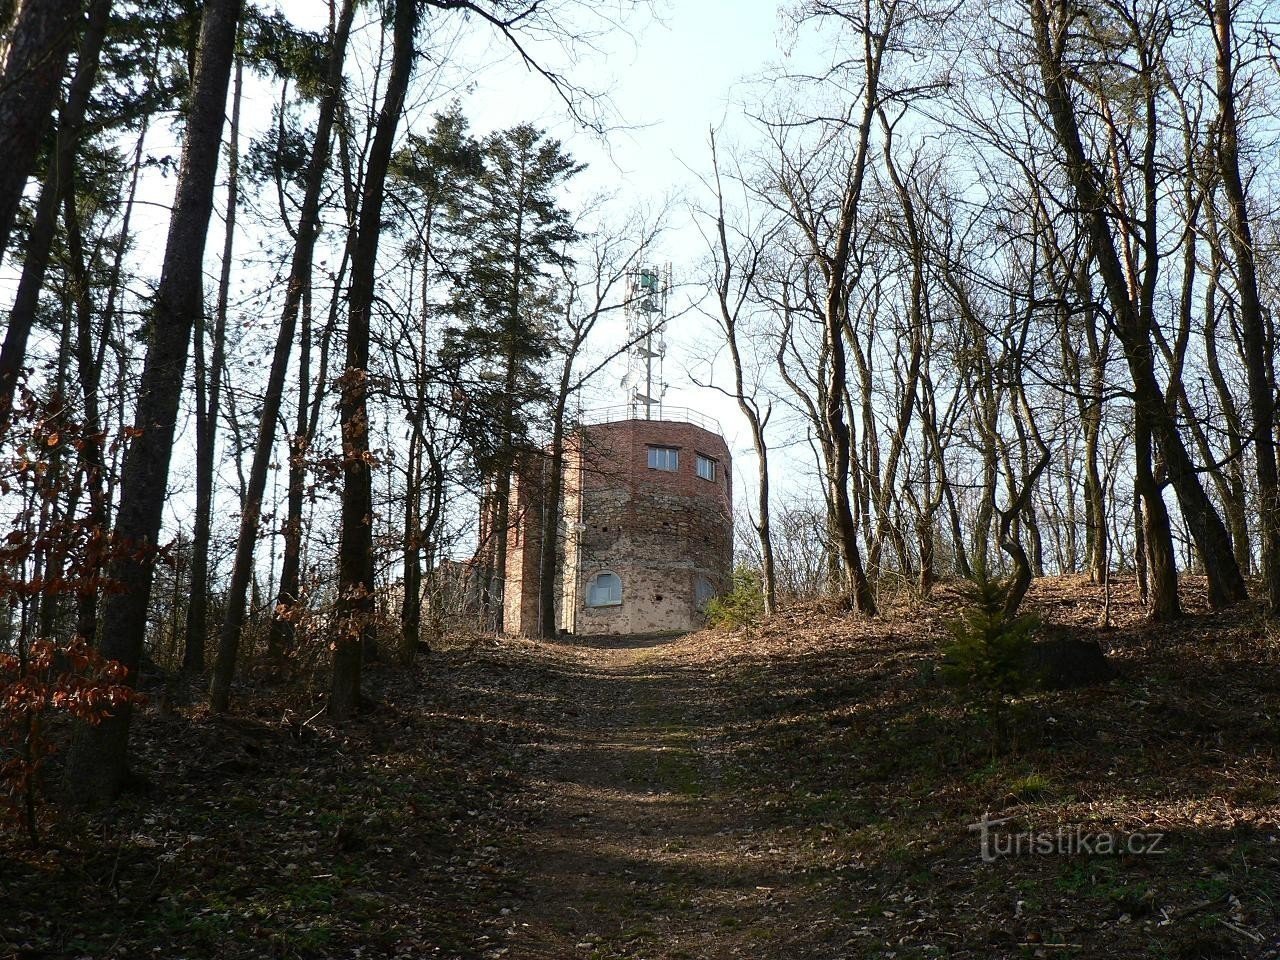 Klatovská Hůrka, vista de la torre de vigilancia